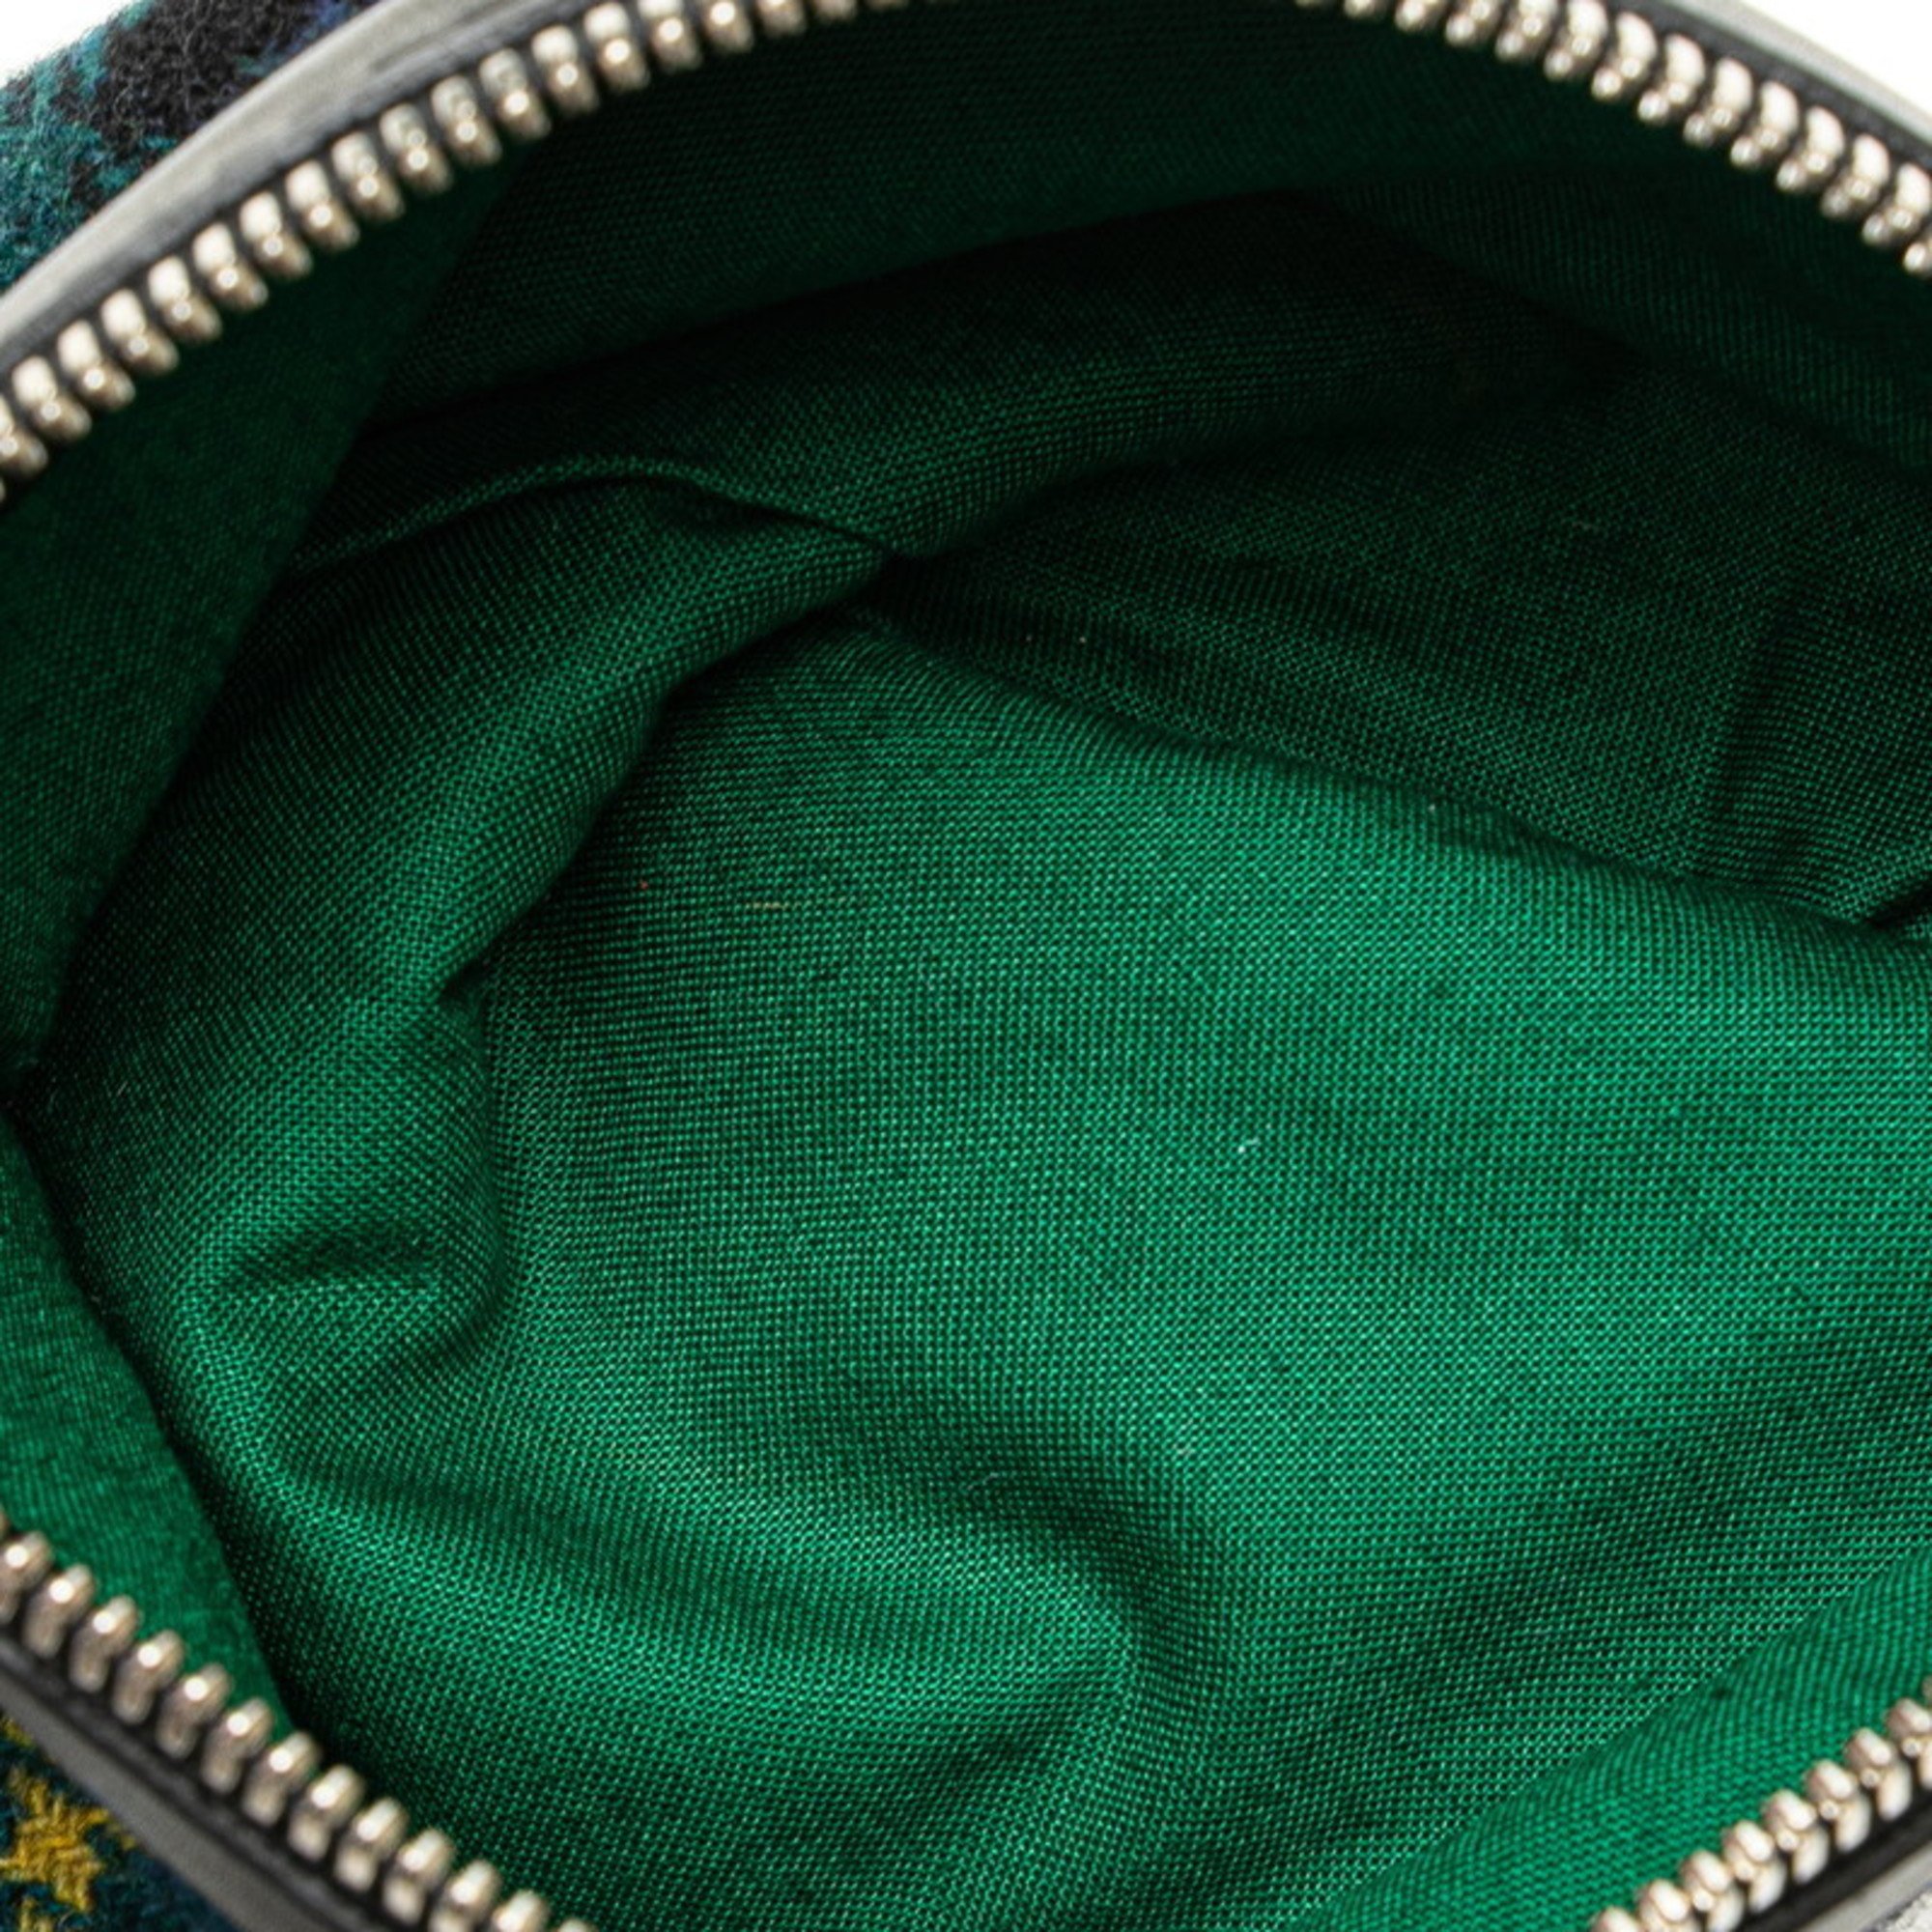 Balenciaga Check Navy Cabas S Tote Bag 339933 Green Black Multicolor Wool Leather Women's BALENCIAGA